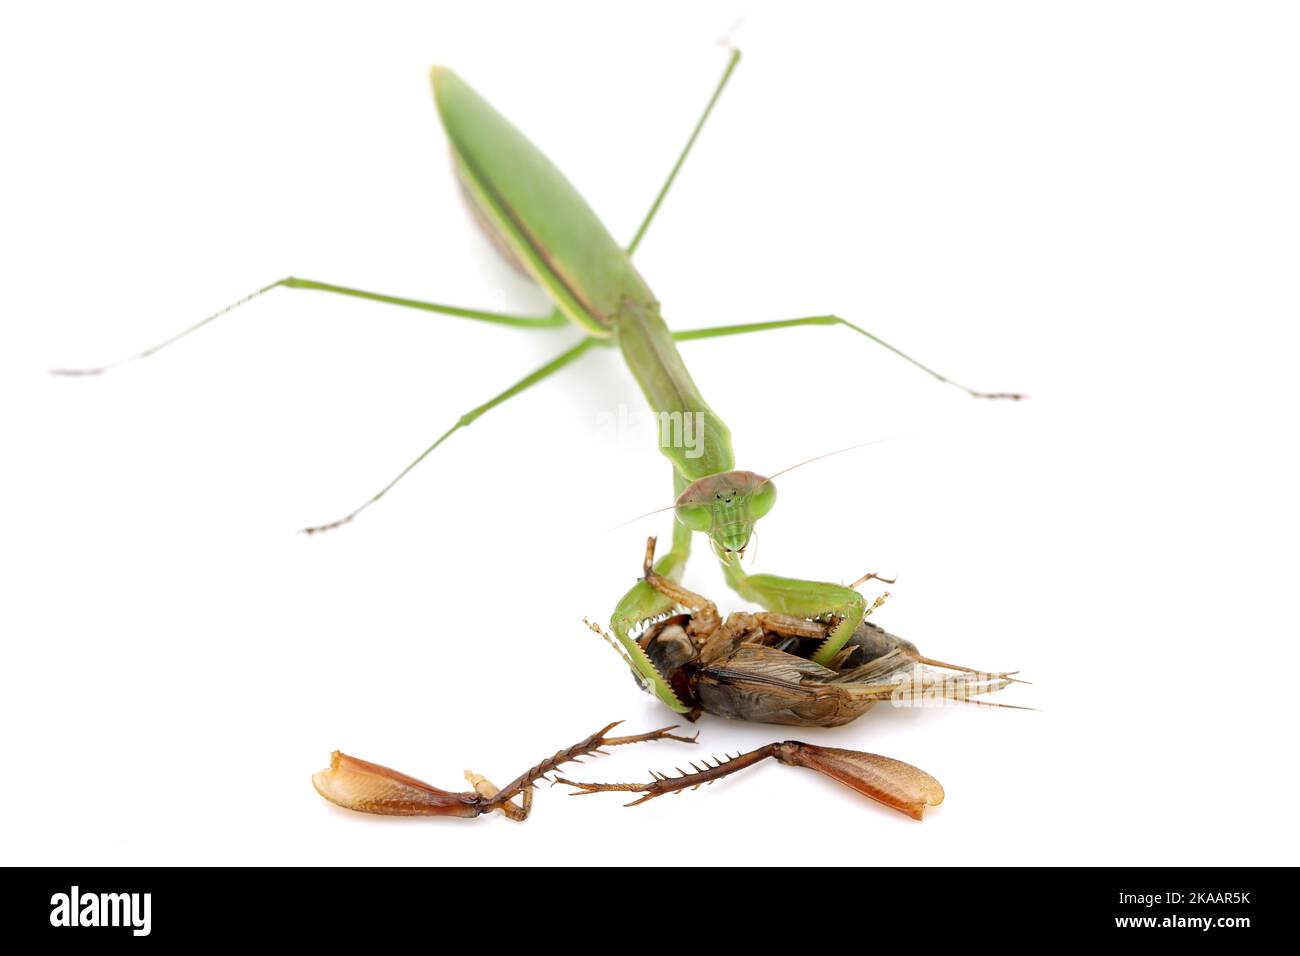 Priant des mantis attrapant une proie, un cricket. Isolé sur fond blanc Banque D'Images